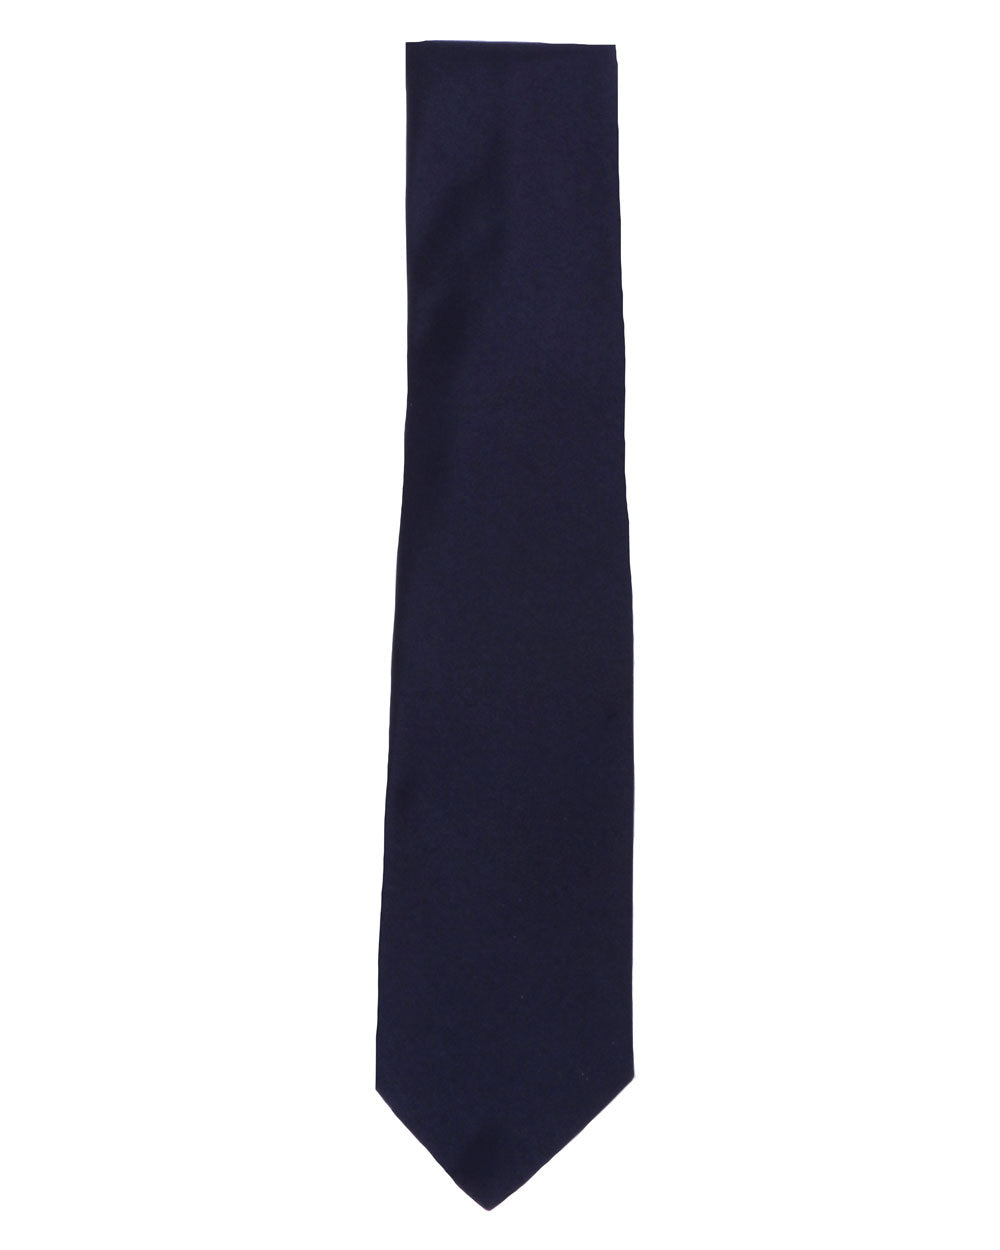 Navy Blue Satin Silk Tie